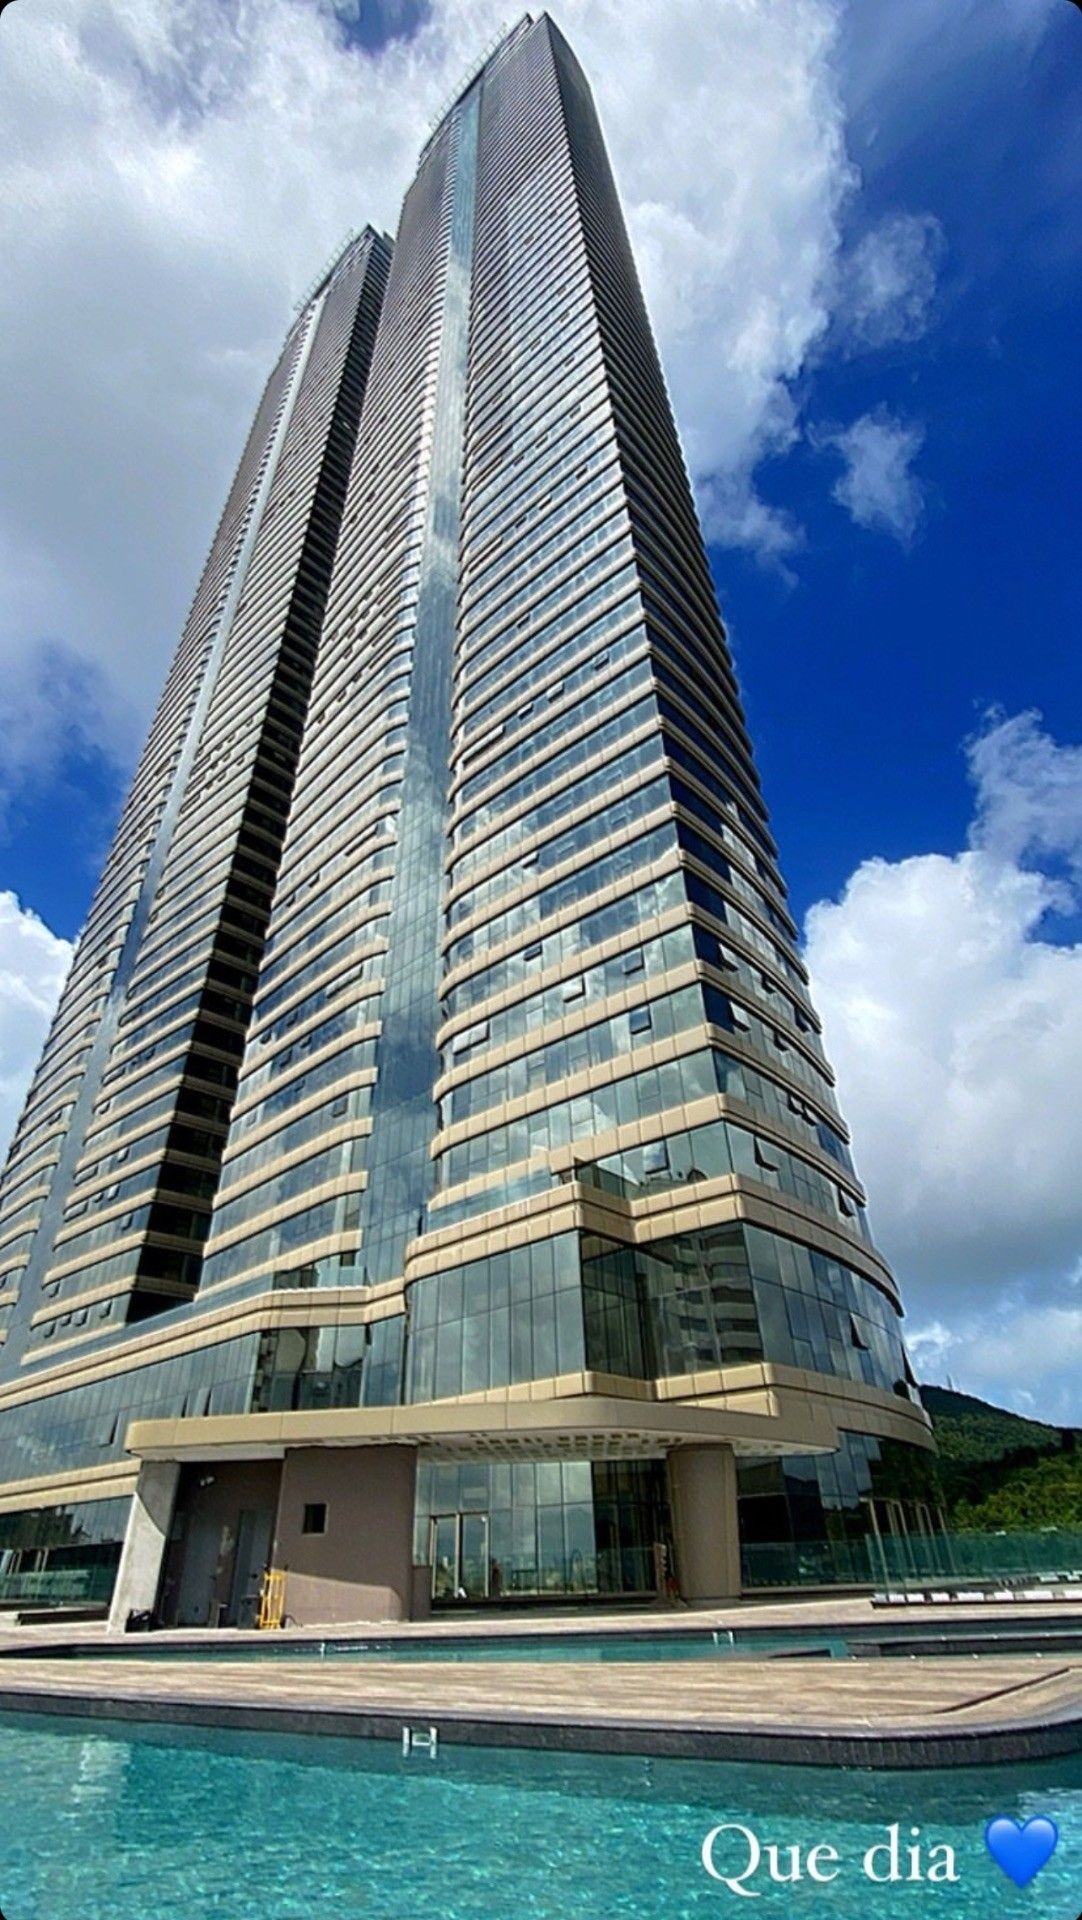 Apartamento Andar Super Alto Na Torre I Final 02 No Maior Empreendimento Com as Torres Gêmeas da América Latina Localizado em Balneário Camboriú-SC